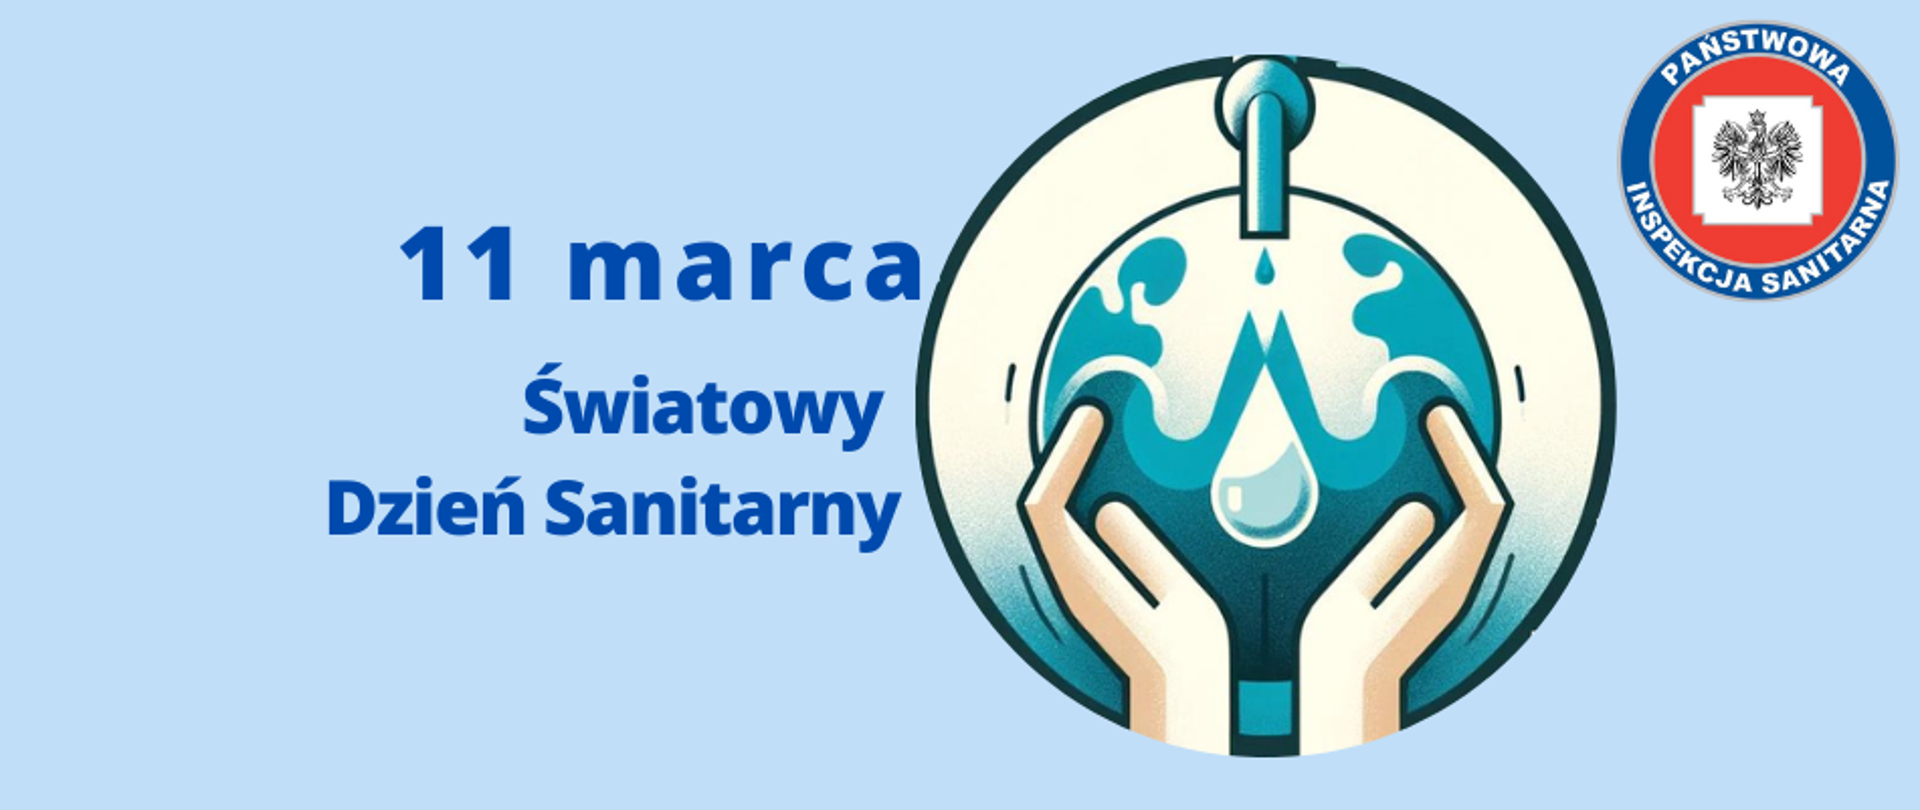 Grafika przedstawia logo z tytułem "Światowy Dzień Sanitarny". Po prawej stronie znajduje się okrągła grafika z lecącą wodą z kranu do okrągłej szklanej kuli która otoczona jest przez dłonie. W prawym górnym rogu grafiki umieszczono logo Państwowej Inspekcji Sanitarnej. Całość na błękitnym tle.